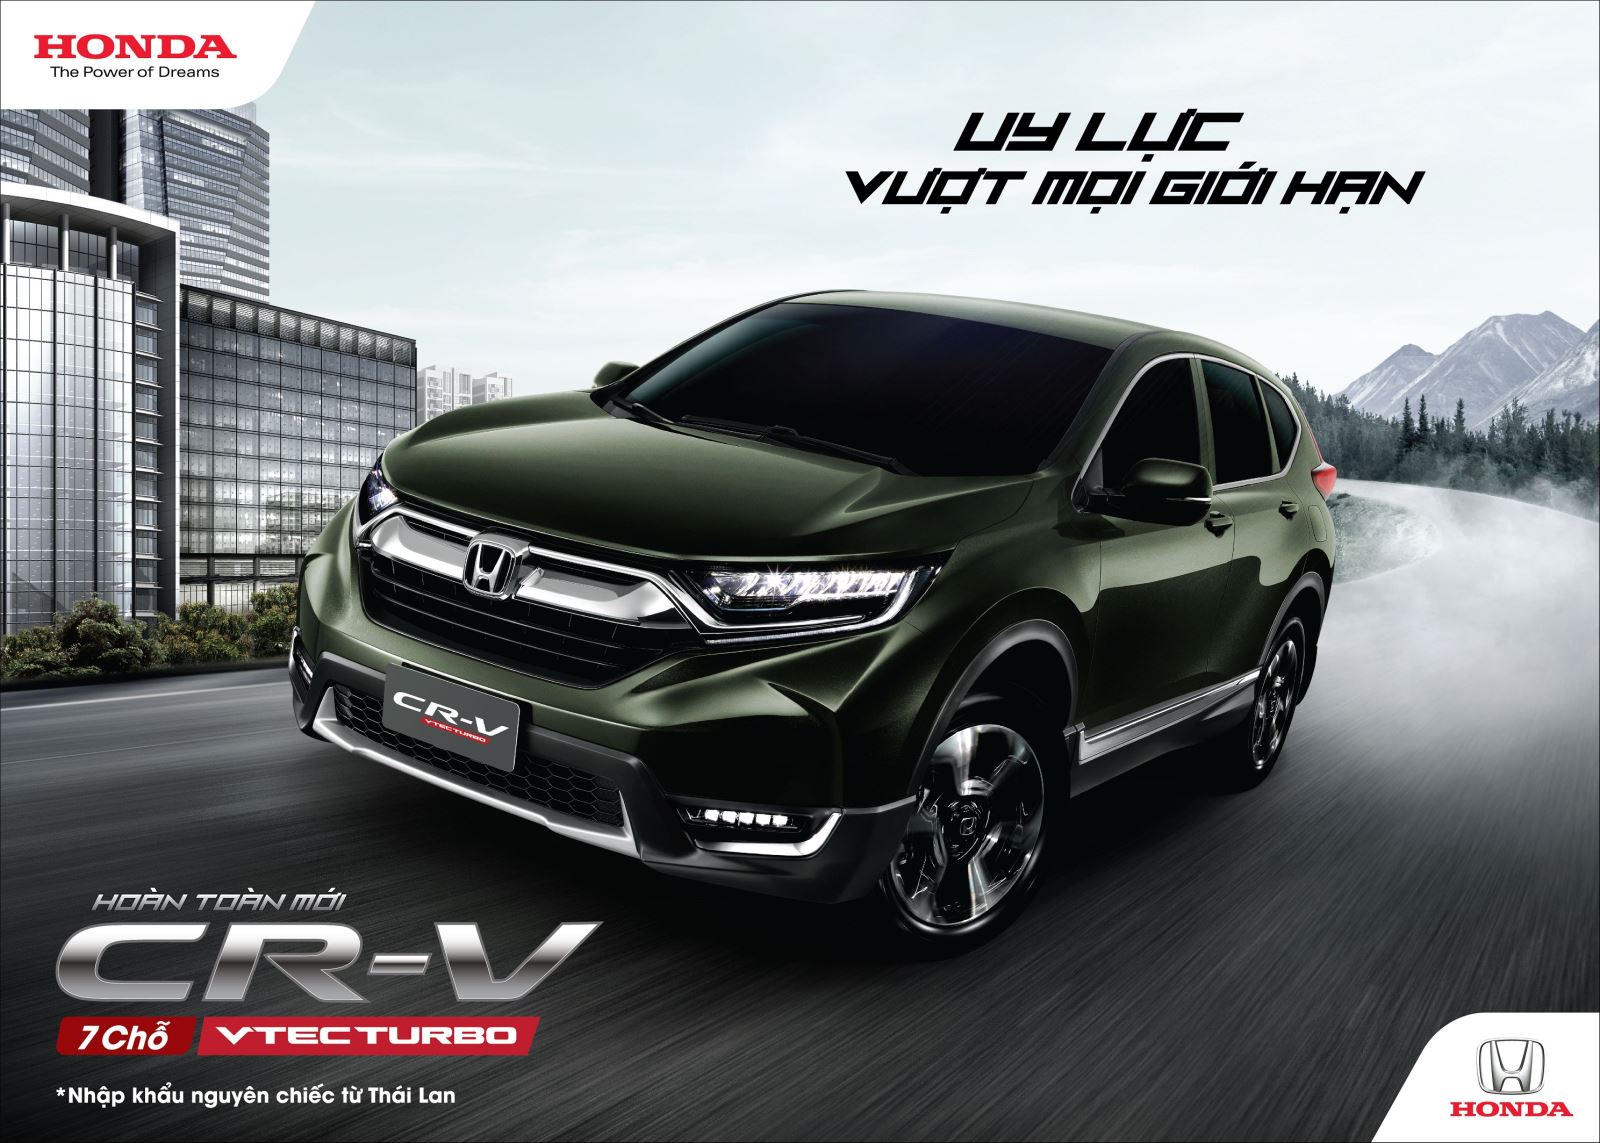 Honda Việt Nam giới thiệu Honda CR-V thế thệ thứ 5 hoàn toàn mới “Uy lực vượt mọi giới hạn”